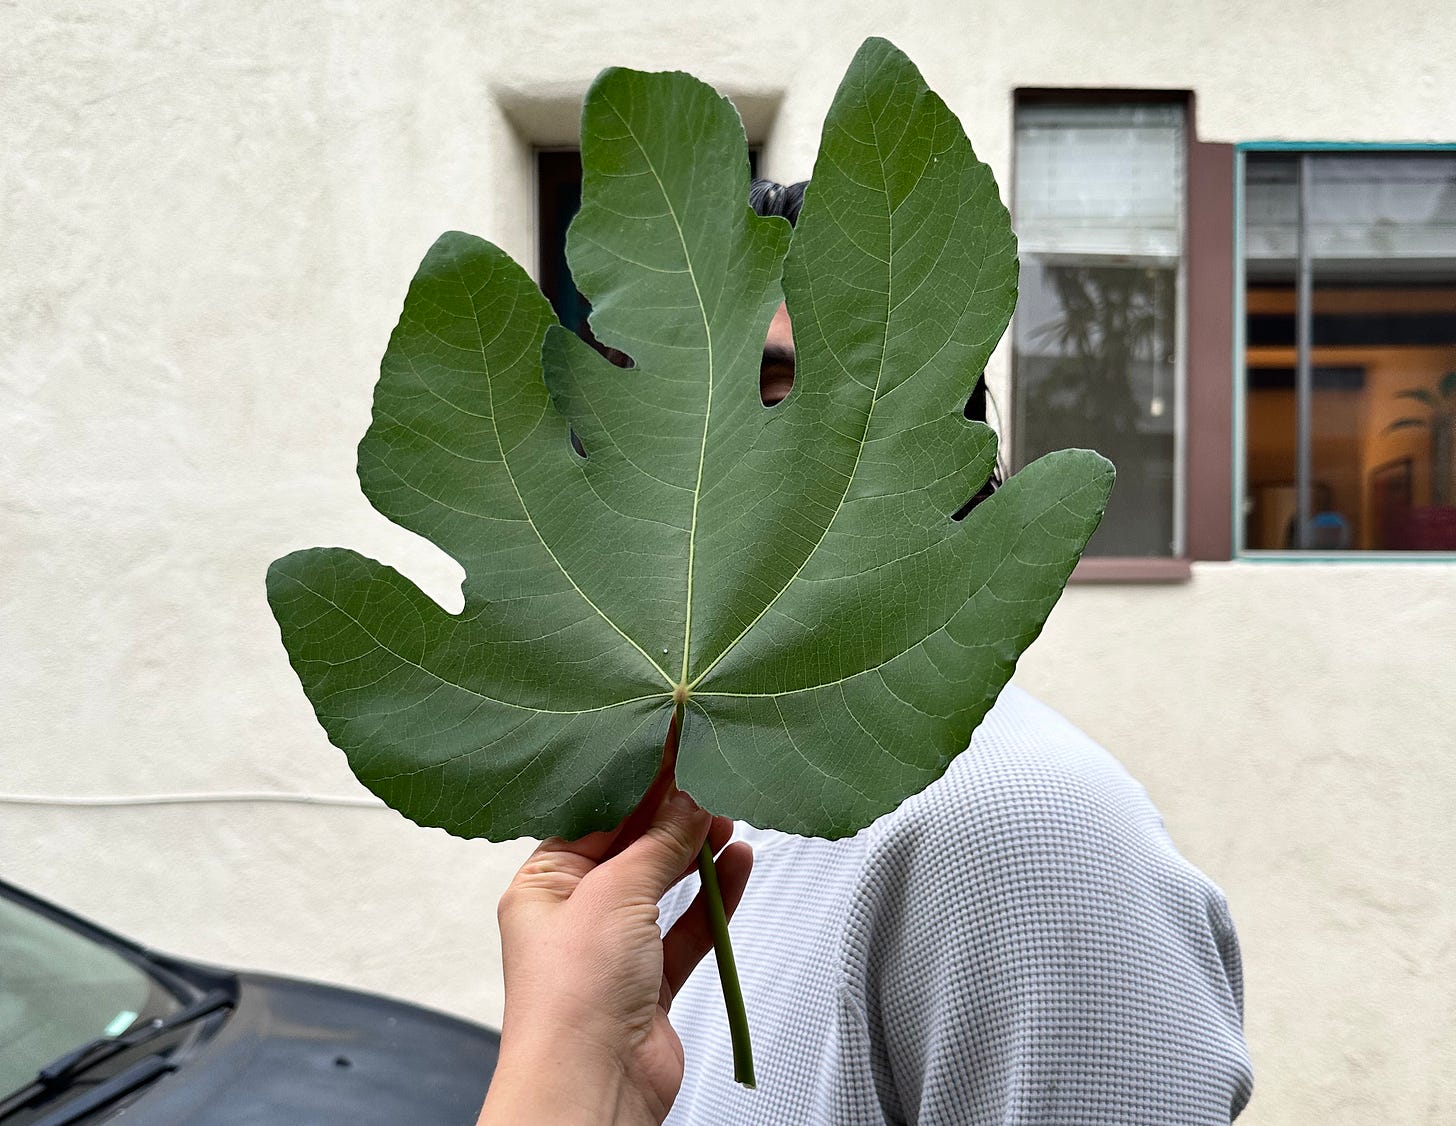 A giant fig leaf